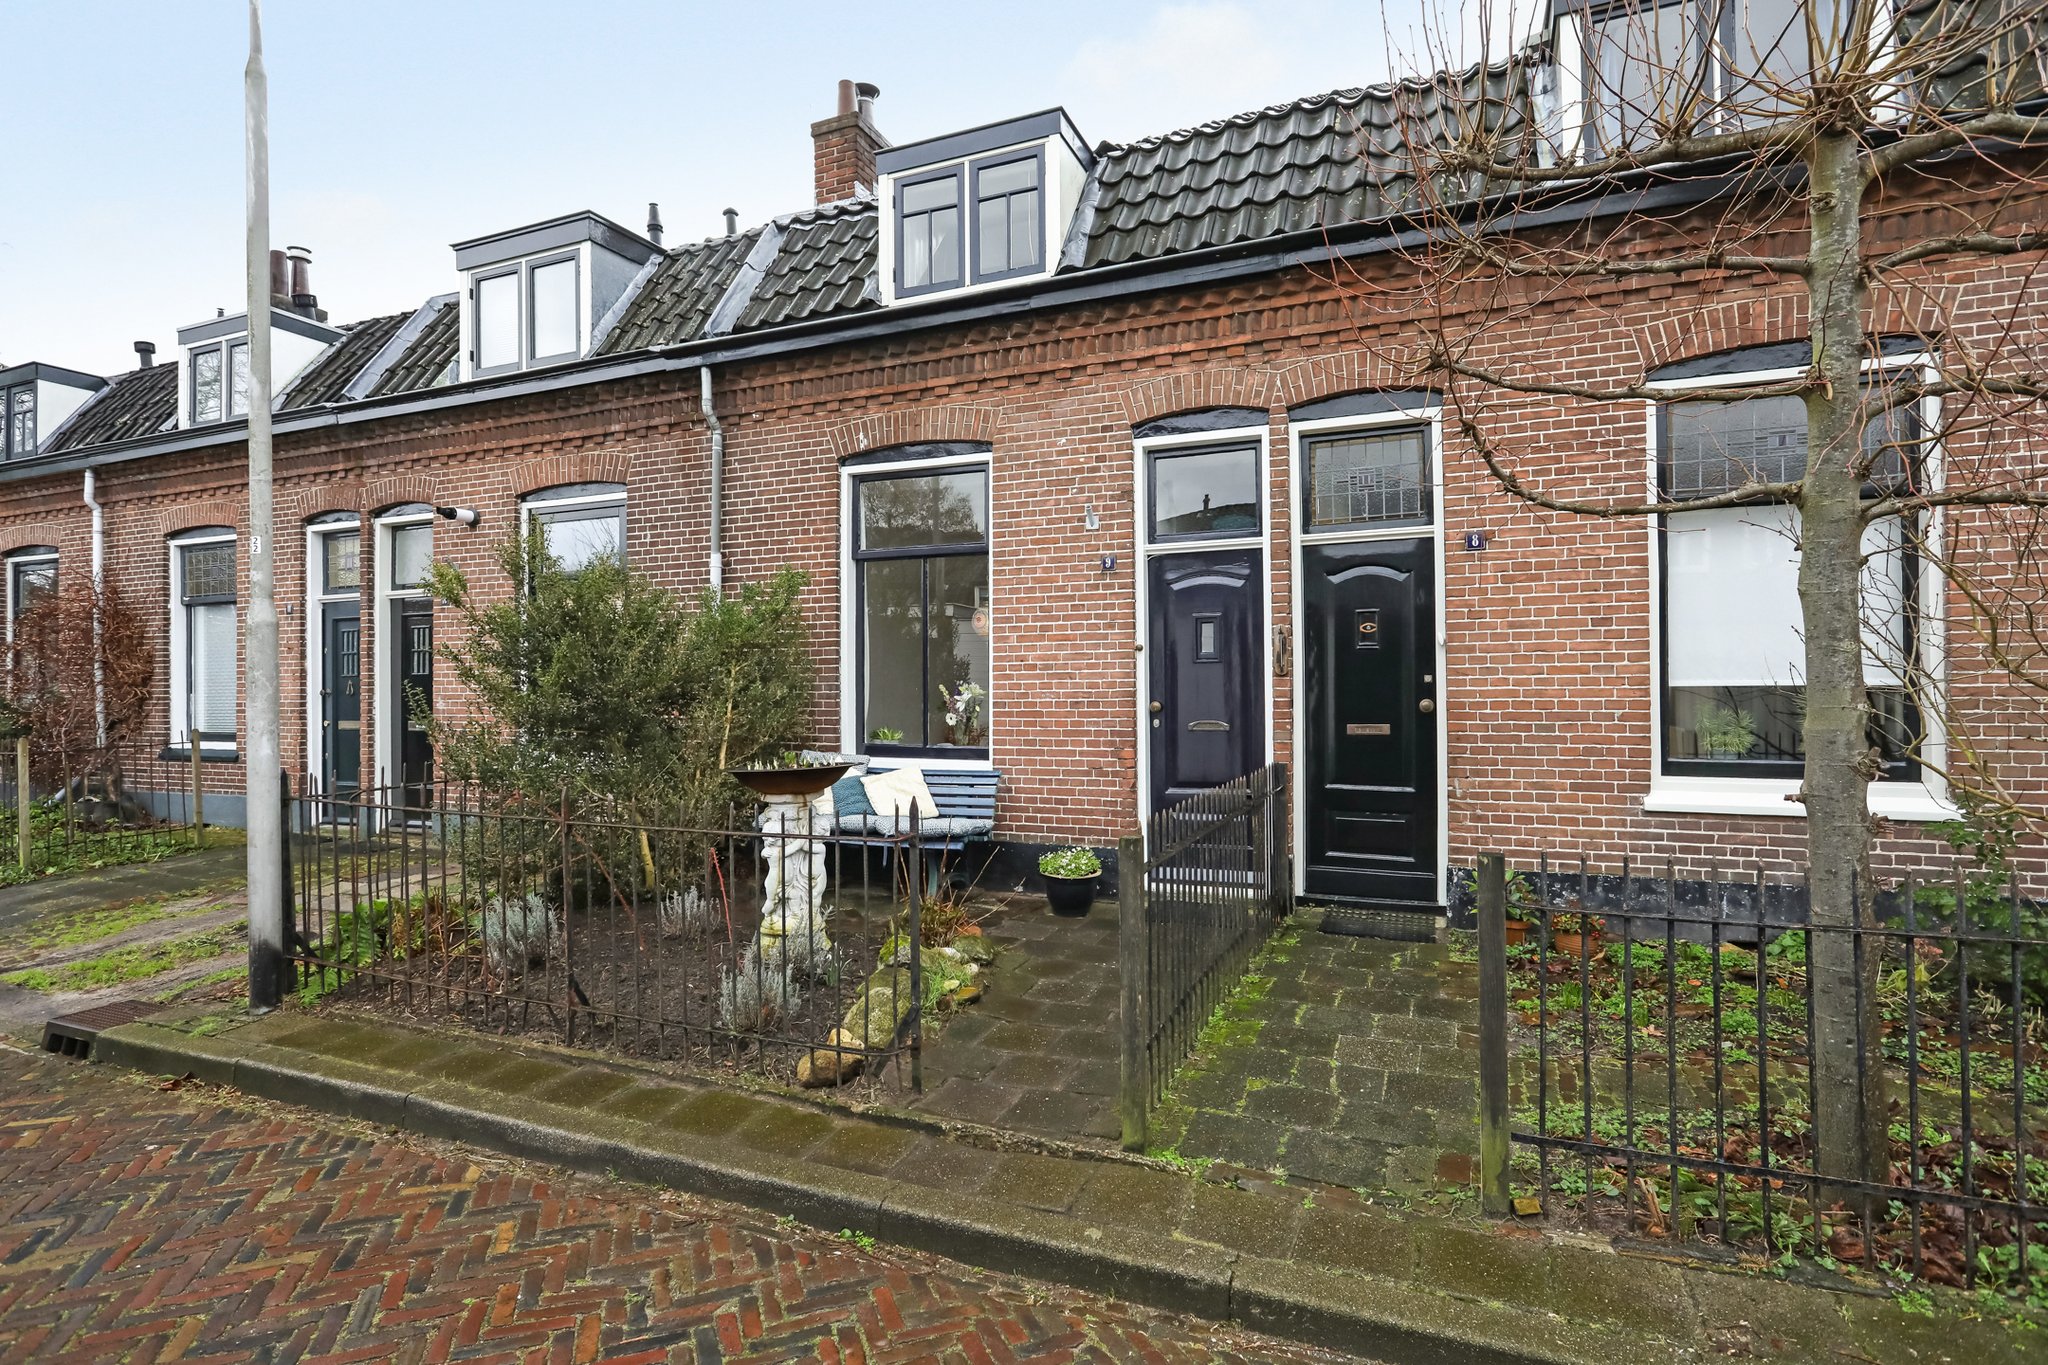 Veldstraat 9 in Vermeerkwartier / Leusderkwartier / Bergkwartier / Amersfoort, Amersfoort